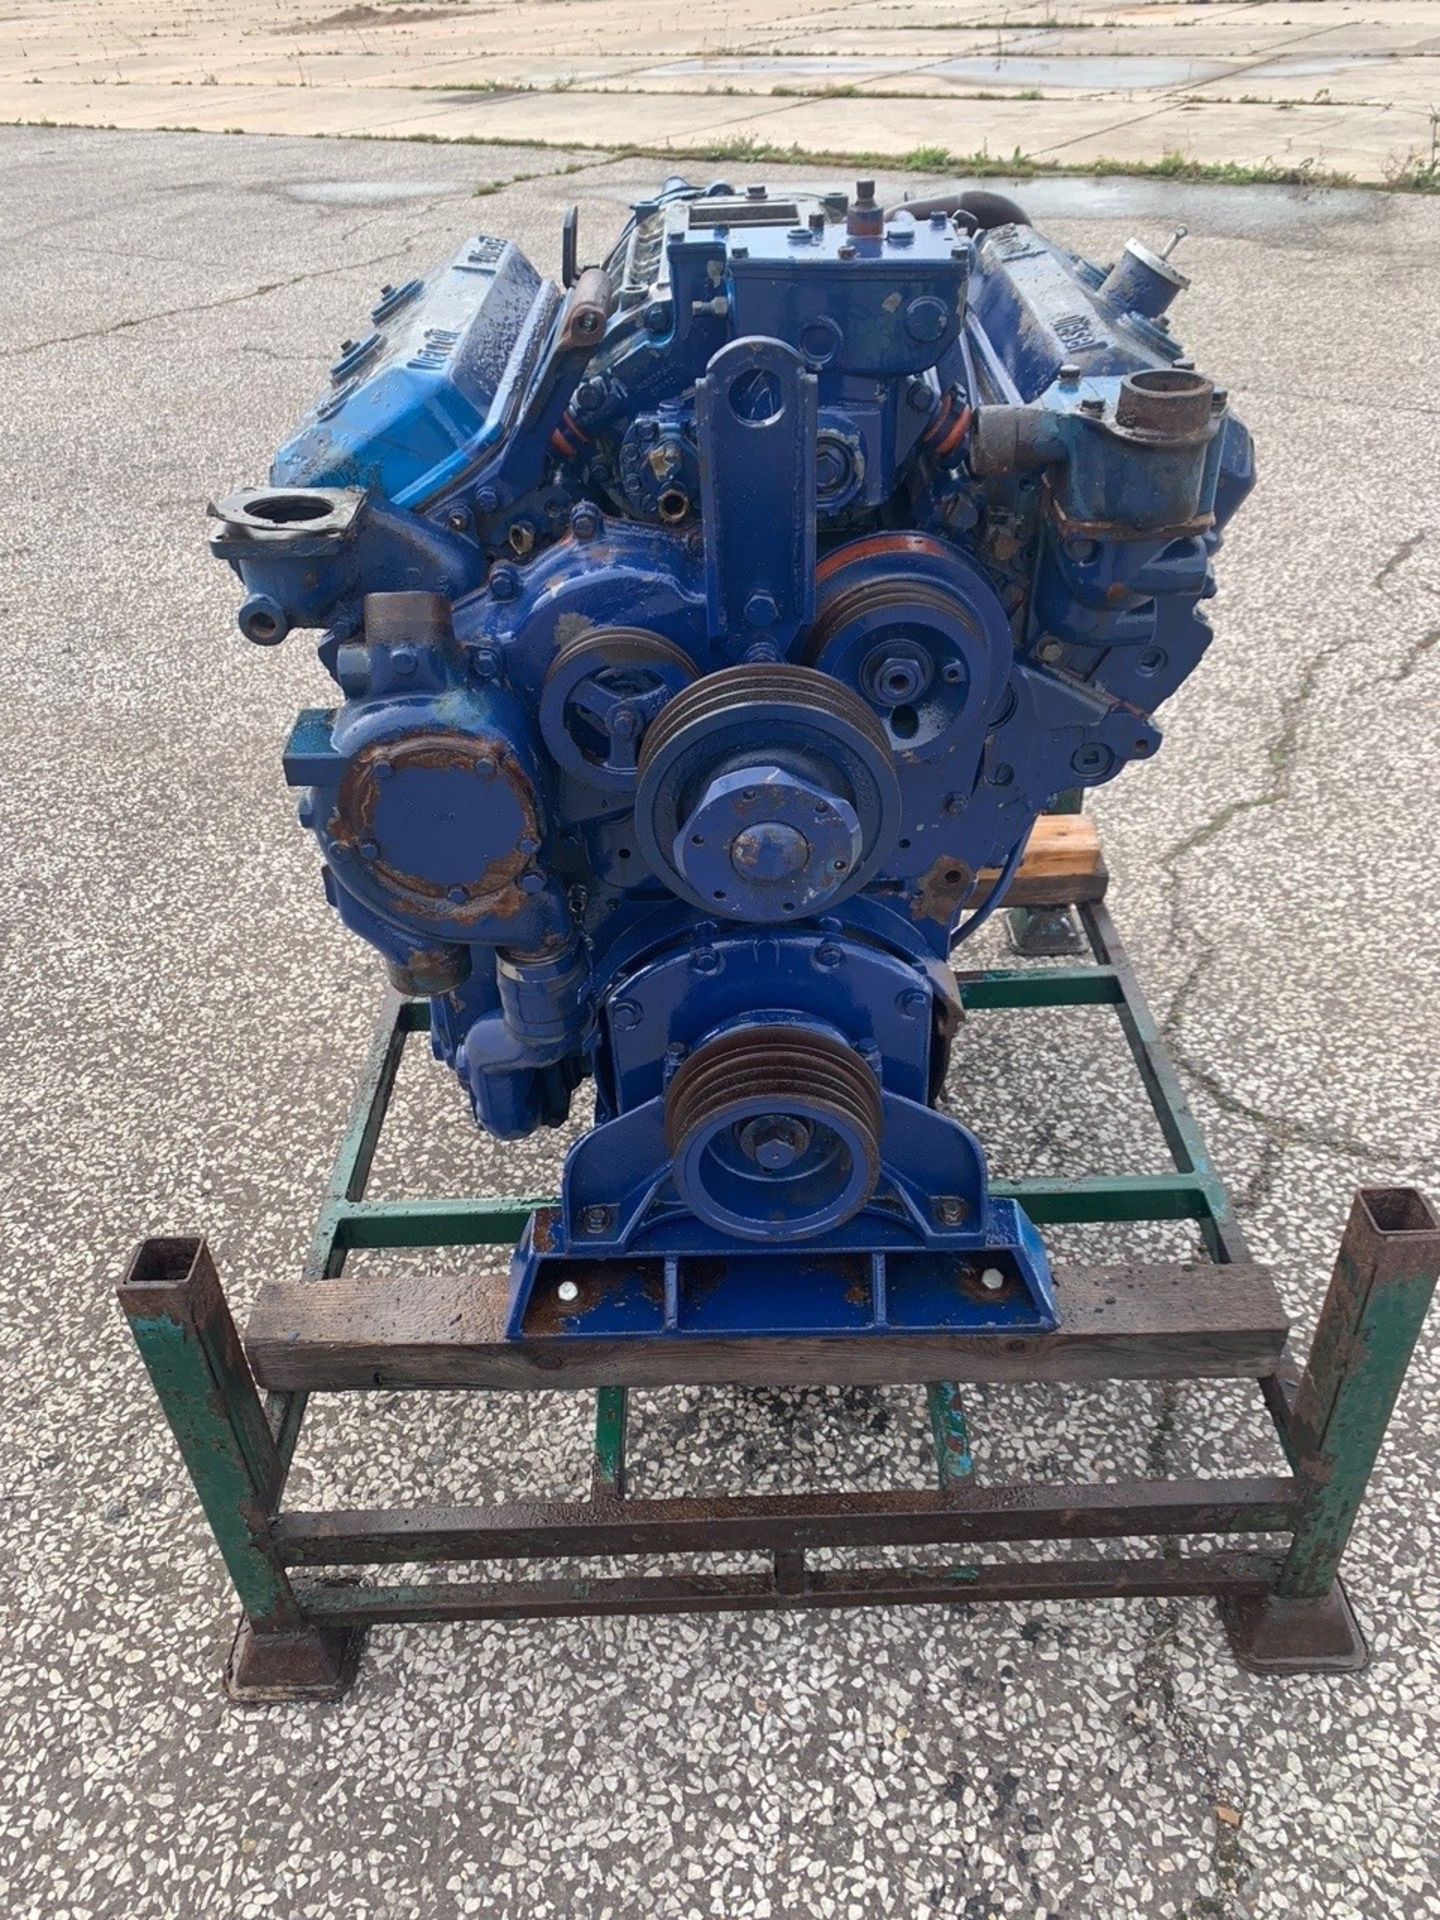 GM Detroit 6V71Diesel Engine: Used - Image 3 of 4